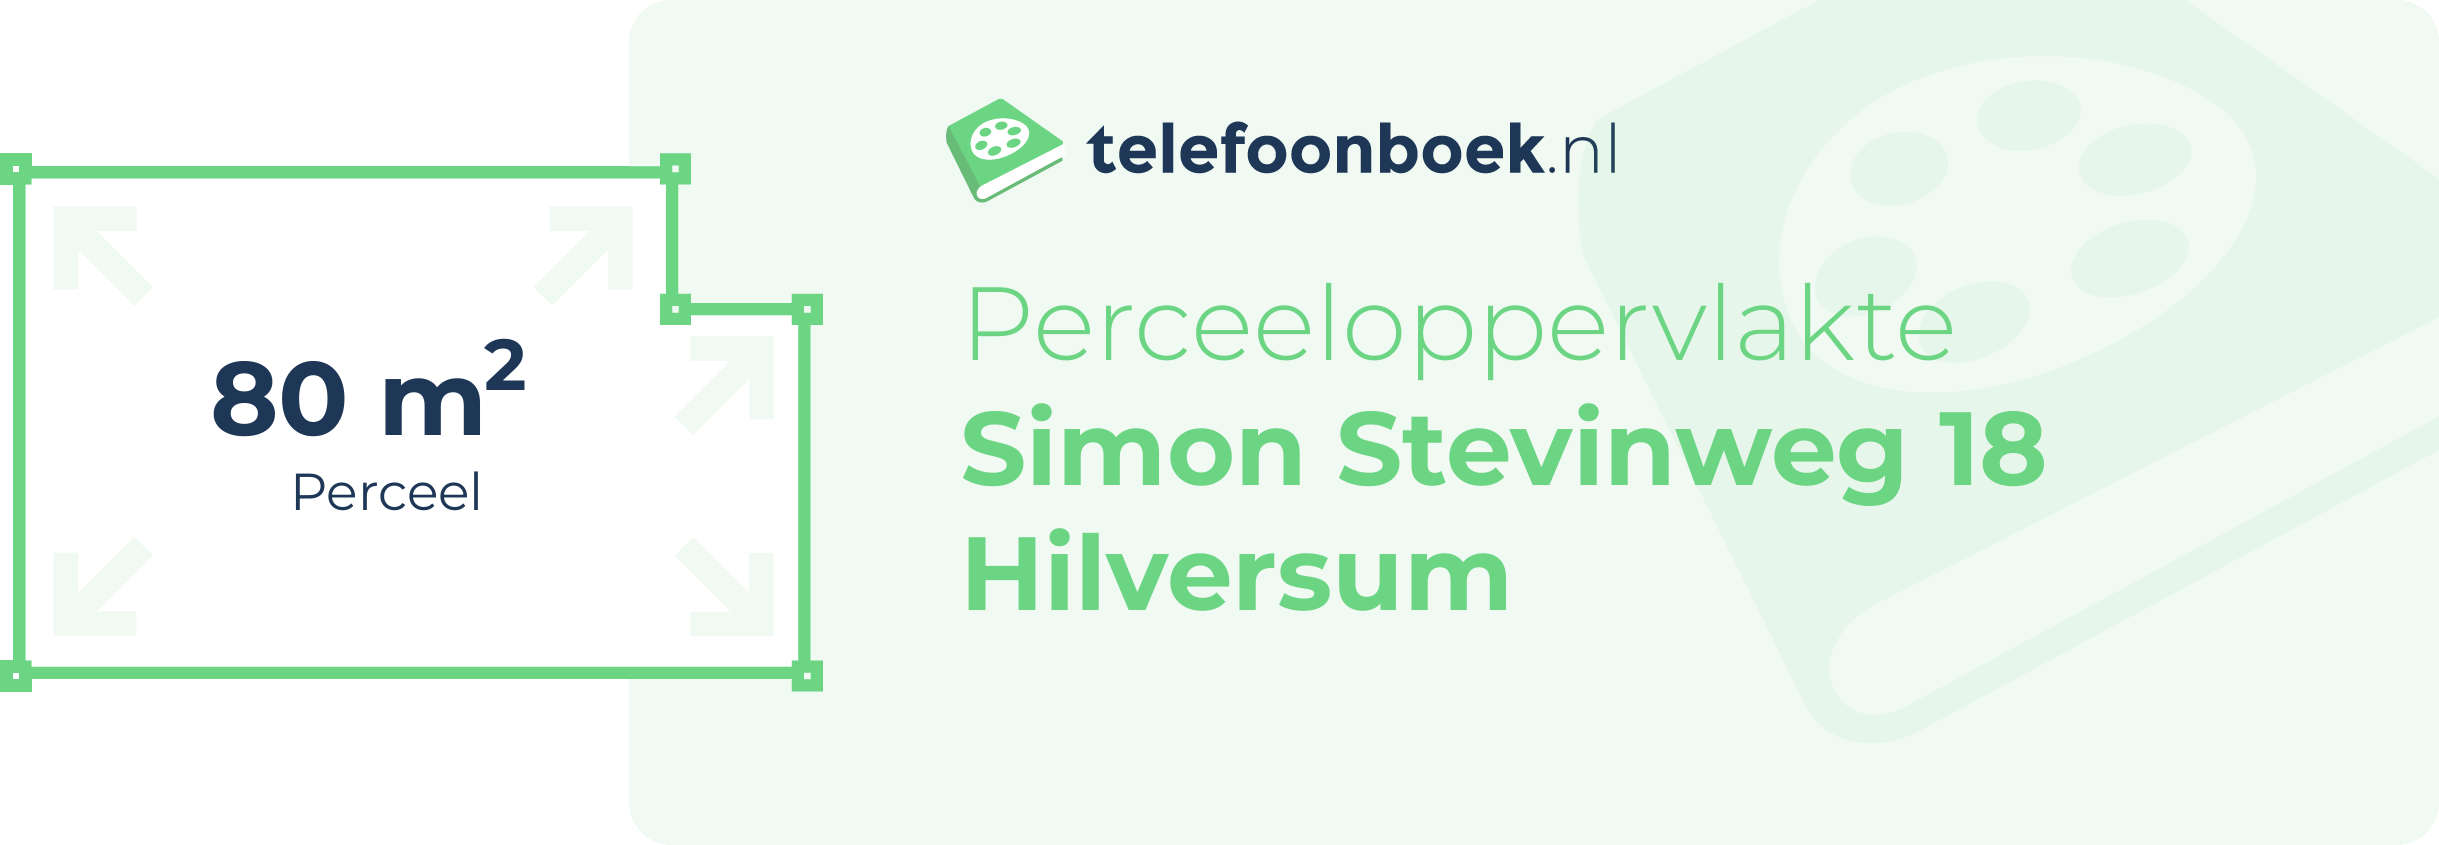 Perceeloppervlakte Simon Stevinweg 18 Hilversum